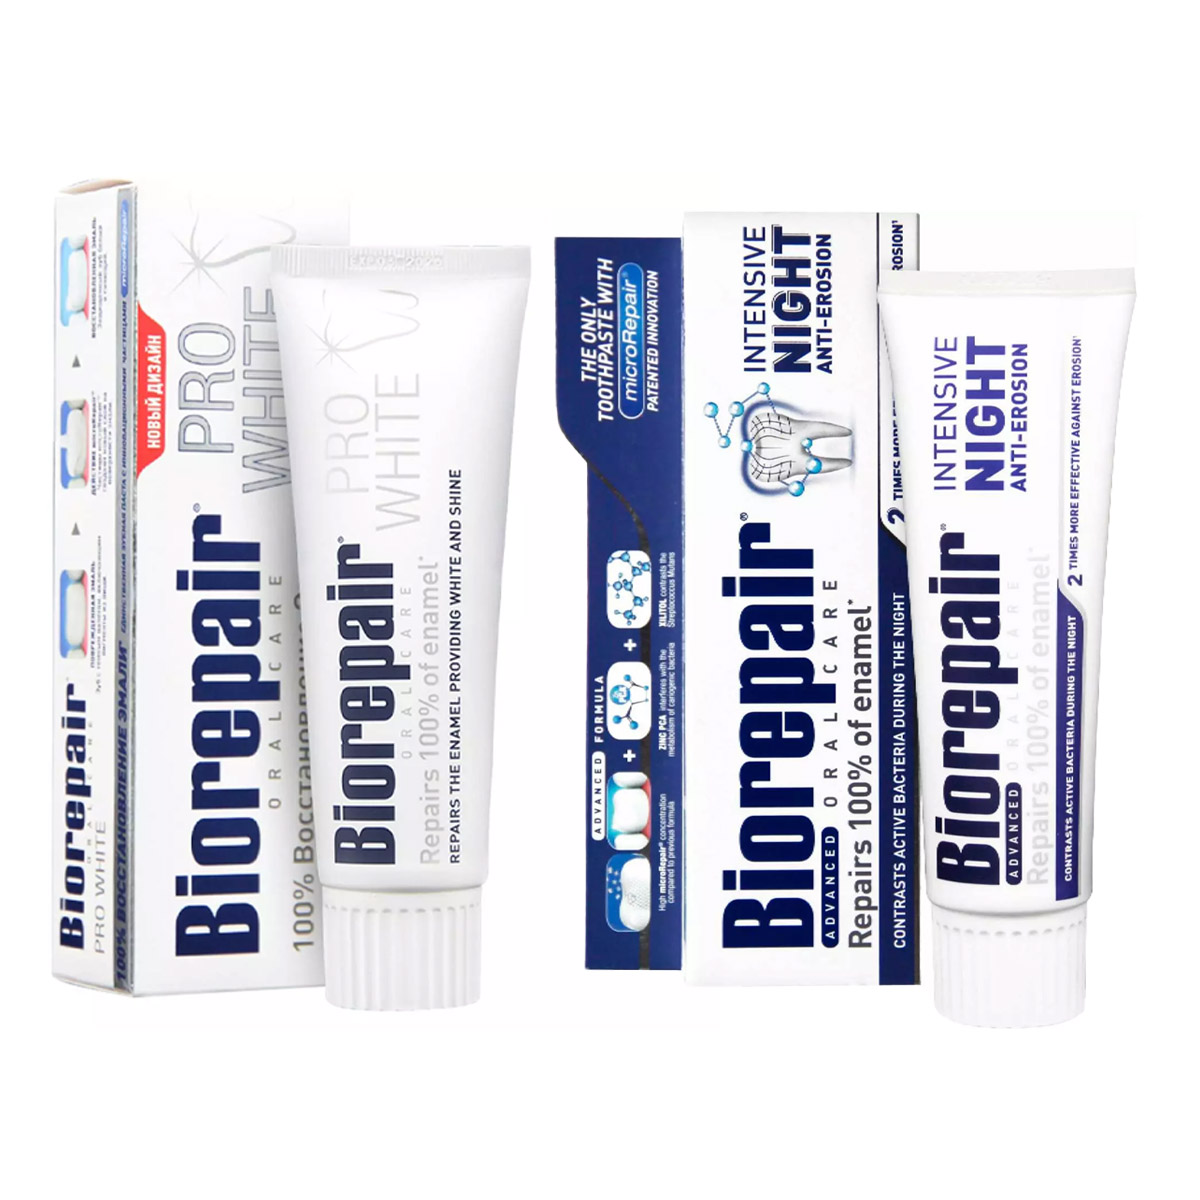 Biorepair Набор зубных паст для сохранения белизны, 2х75 мл (Biorepair, Отбеливание и лечение) цена и фото